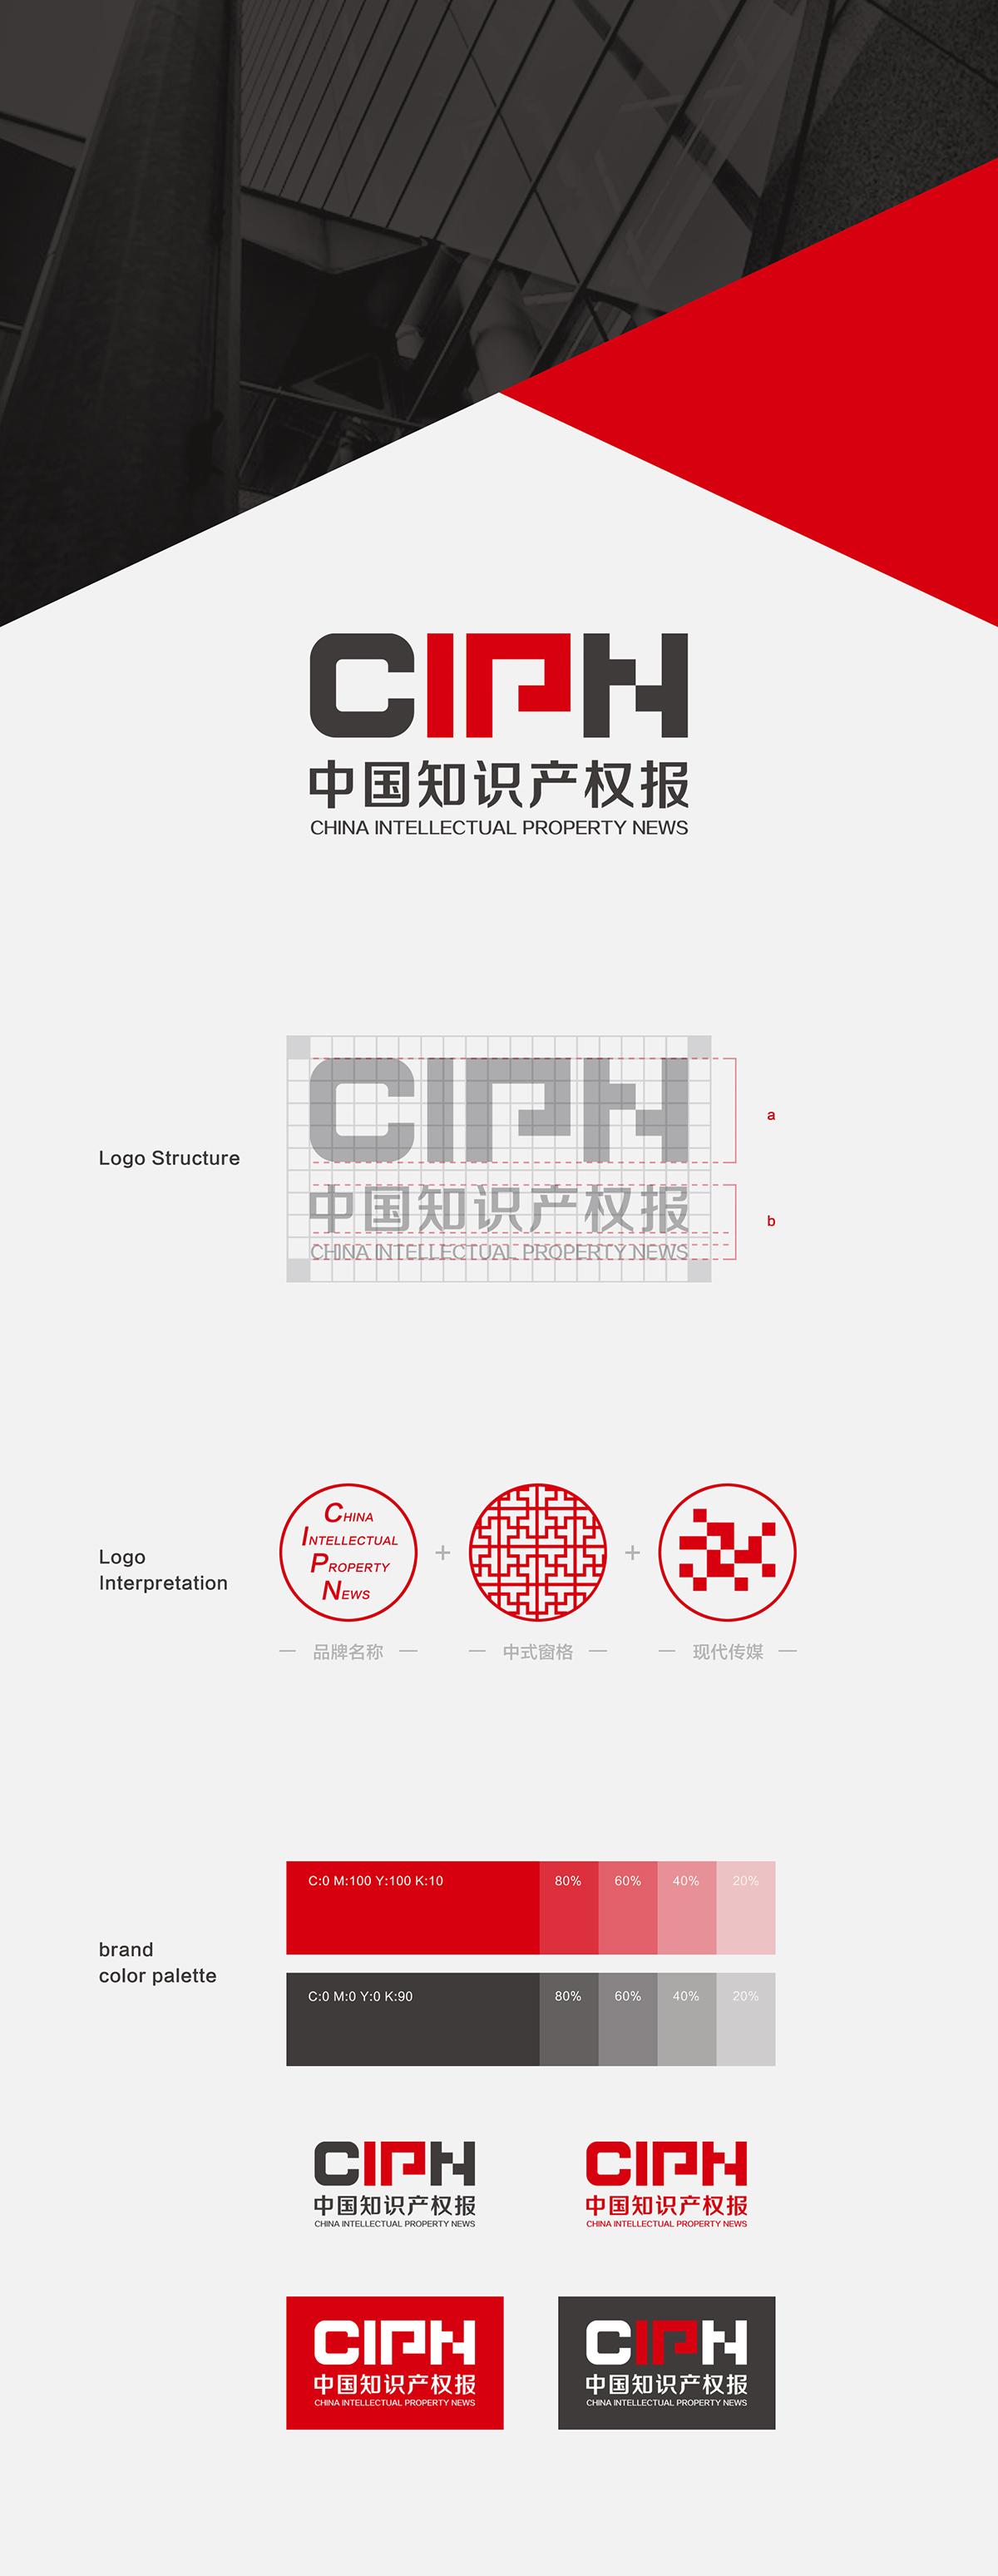 中国知识产权报(新媒体)品牌形象设计图0